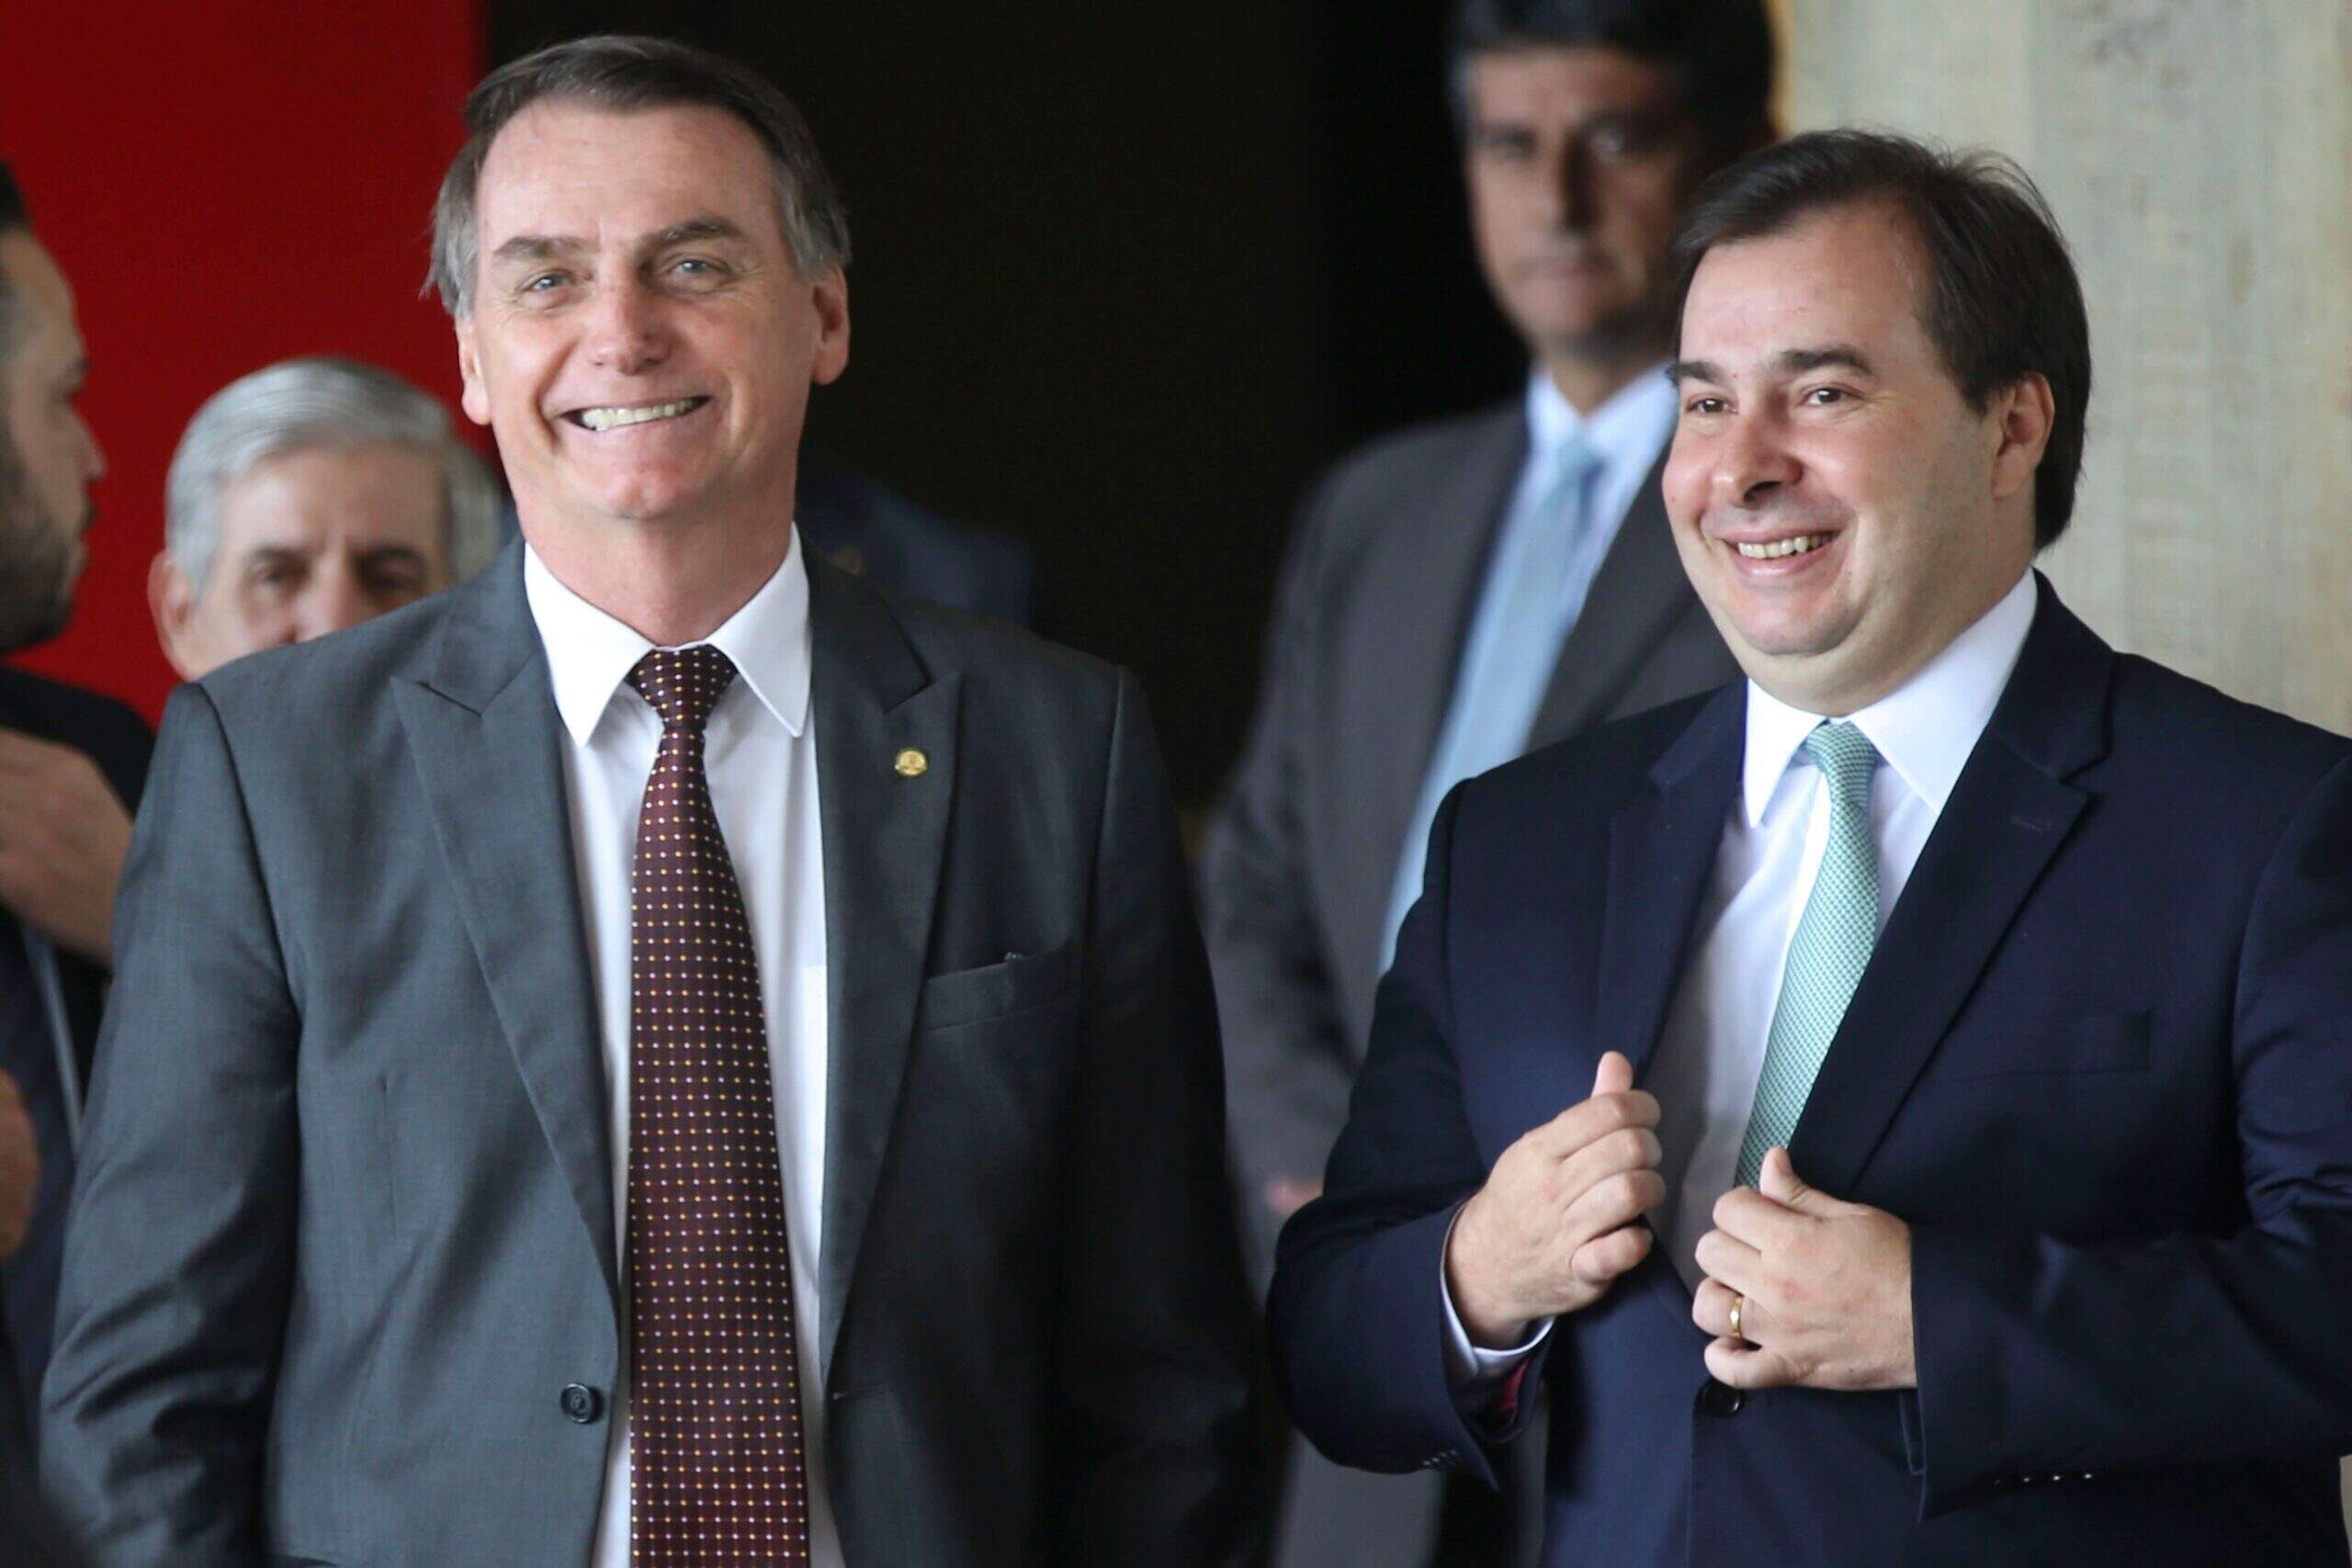 O presidente, Jair Bolsonaro, e o presidente da Câmara dos Deputados, Rodrigo Maia, em pé sorrindo. Conteúdo sobre bolsonaro e congresso em 2019